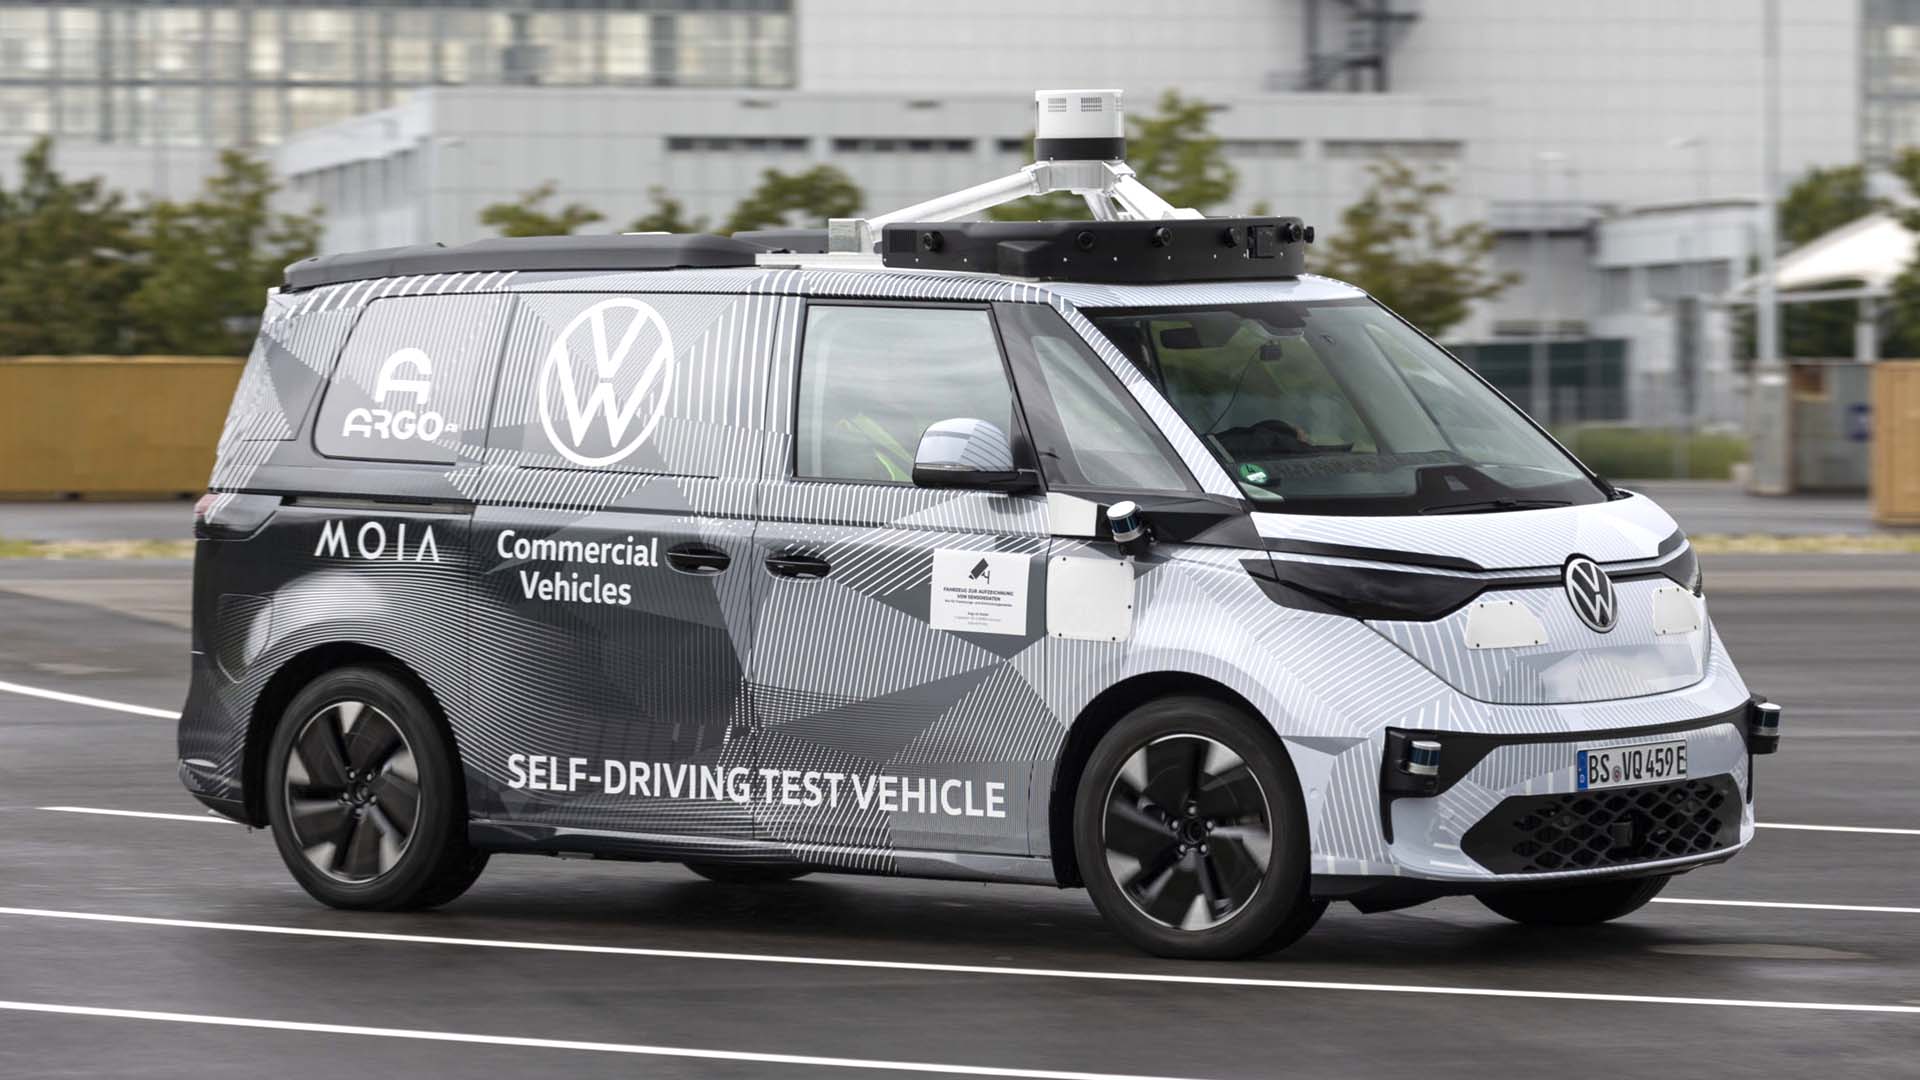 Volkswagen retira su inversión y apostará todo a Cariad, su propia empresa de desarrollo de conducción autónoma, que hasta el momento ha generado más problemas que soluciones para la marca